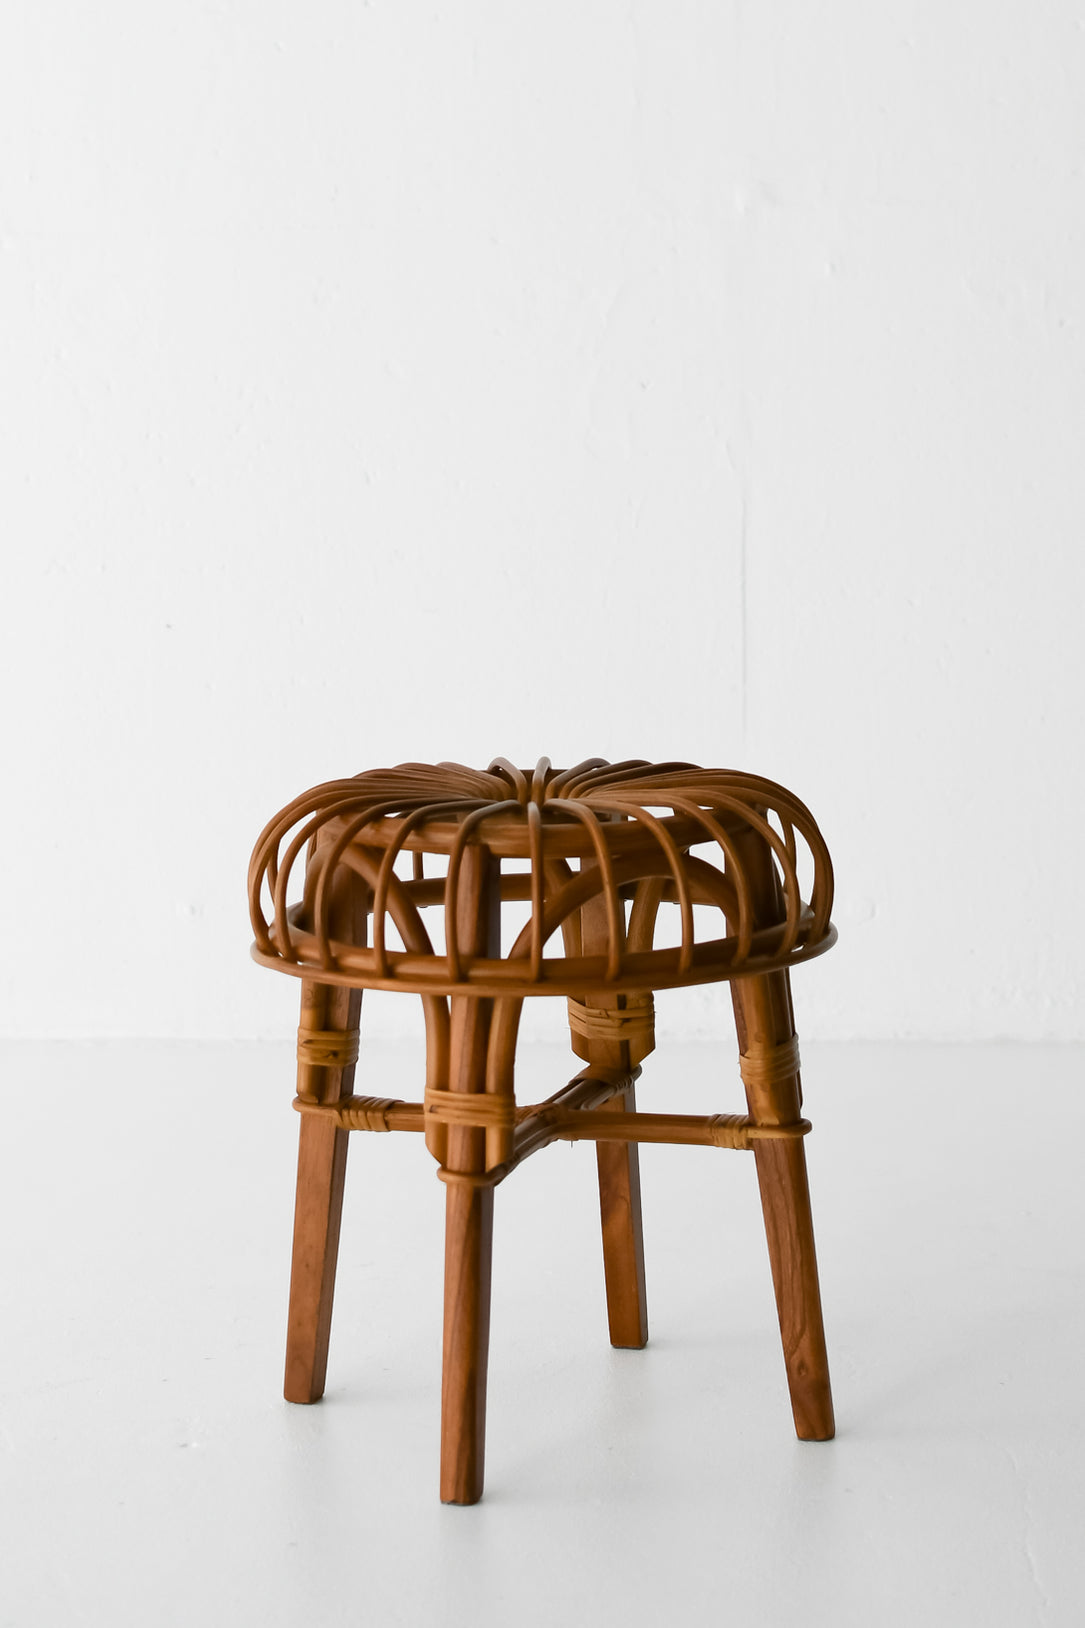 Rattan stool ラタンスツール 籐椅子 ラタンチェア インテリア 北欧インテリア リモート 自宅オフィス フランスヴィンテージ